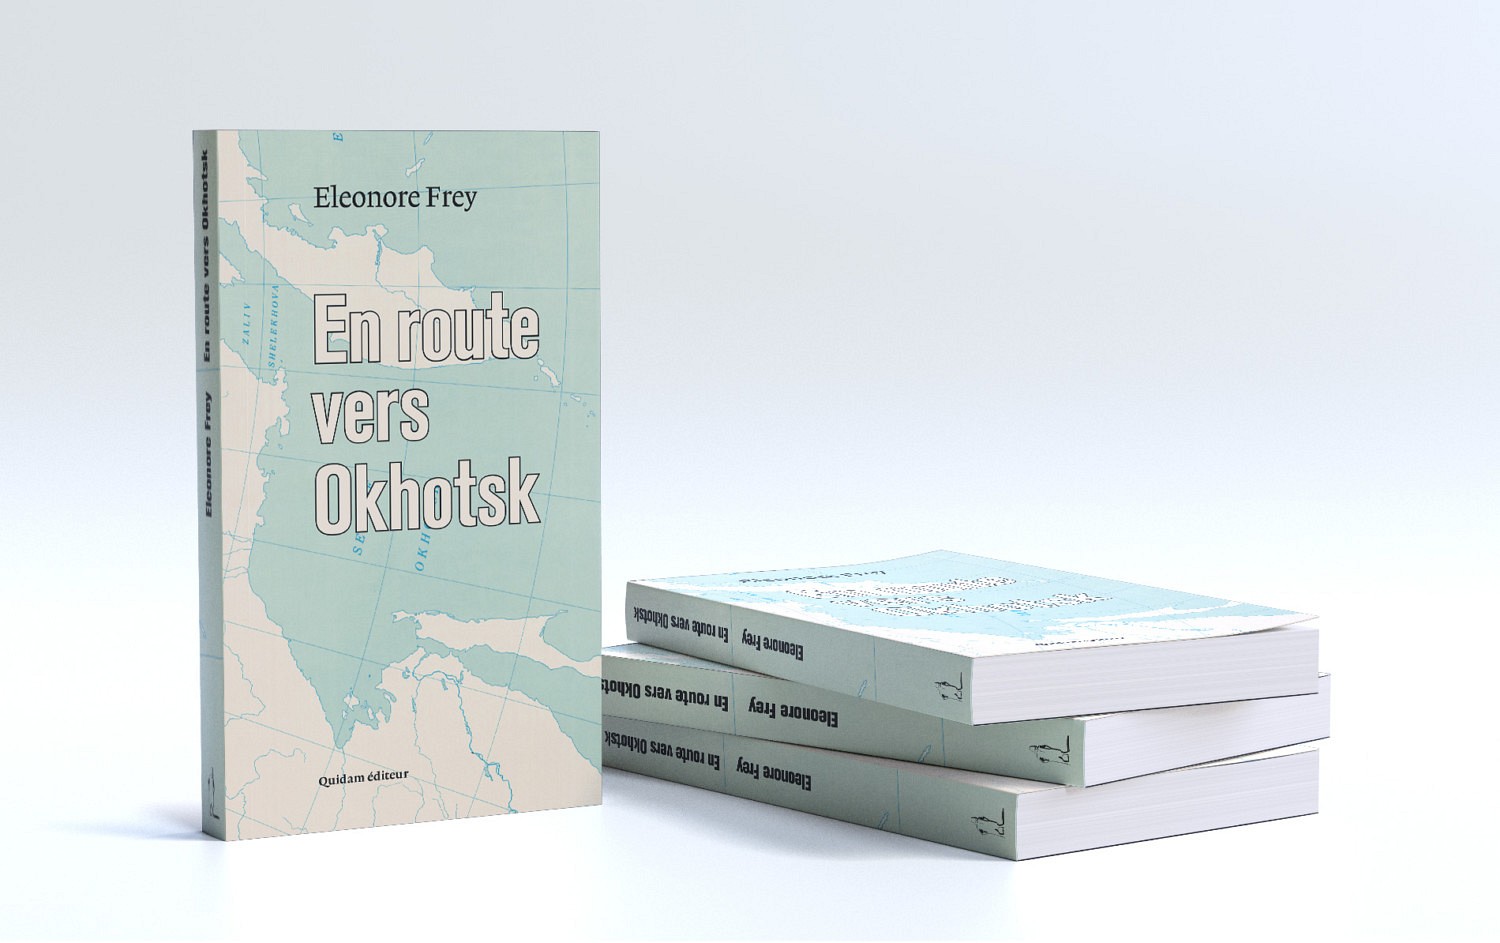 En route vers Okhotsk - Eleonore frey | Carte Est de la Sibérie, Library of congress.